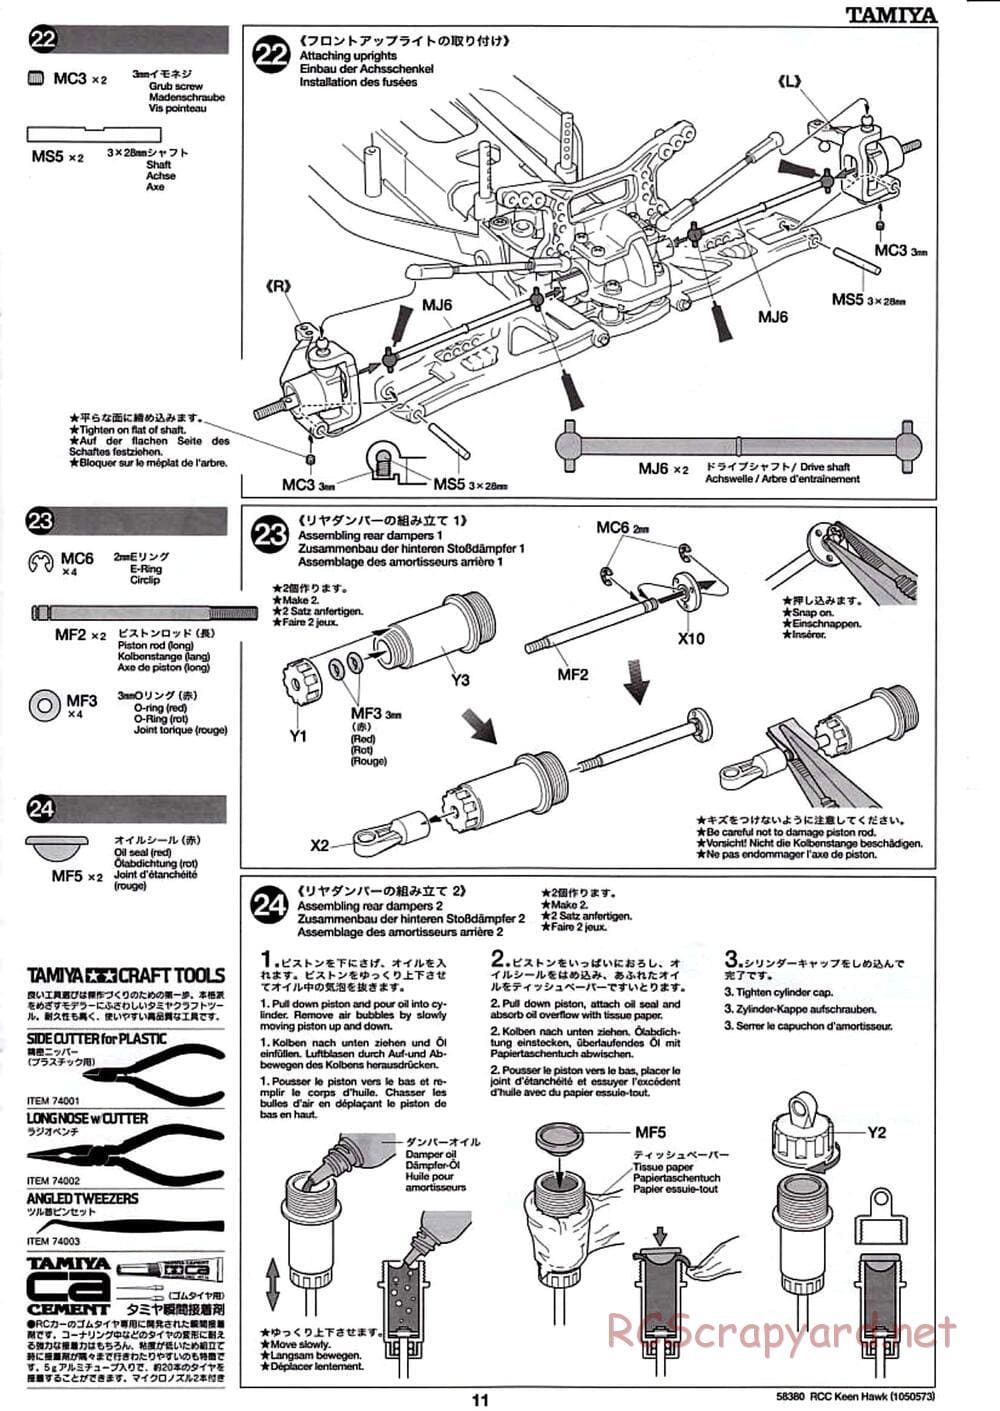 Tamiya - Keen Hawk Chassis - Manual - Page 11